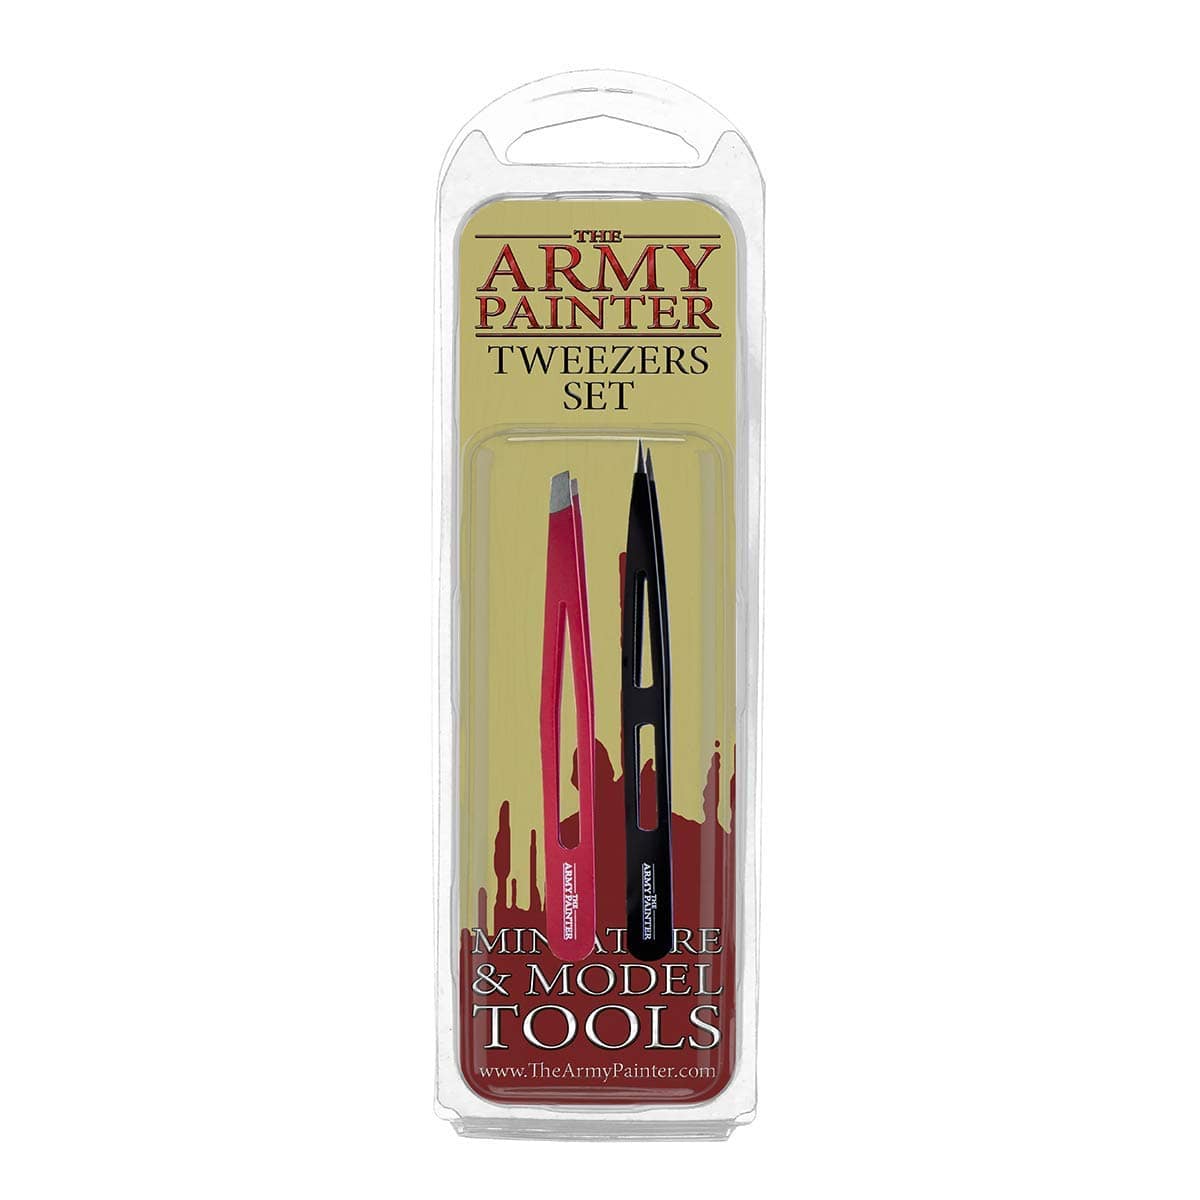 The Army Painter Tools The Army Painter Tools: Tweezers Set